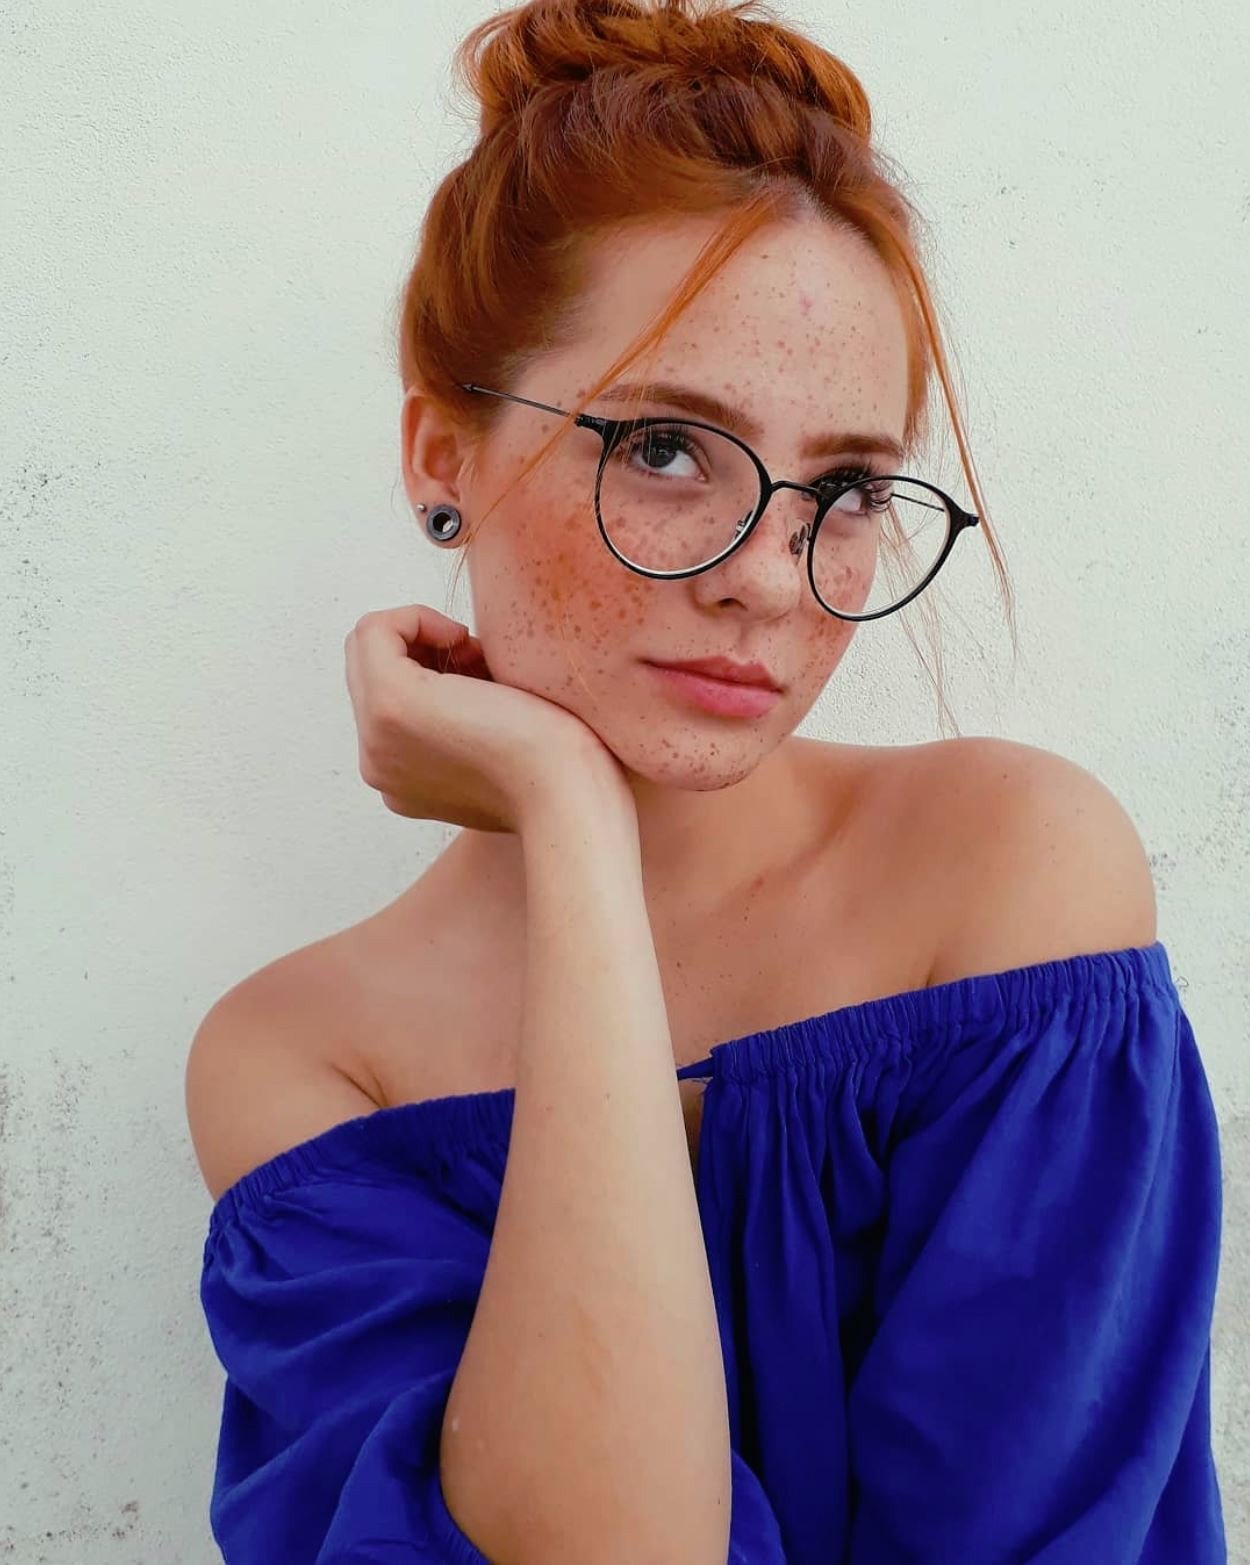 Photo by secretsoforange with the username @secretsoforange,  September 15, 2018 at 1:30 PM and the text says 'gewelmaker:



Duda Brandão

 #redhead  #duda  #brandão  #freckles  #glasses  #woman  #blue'